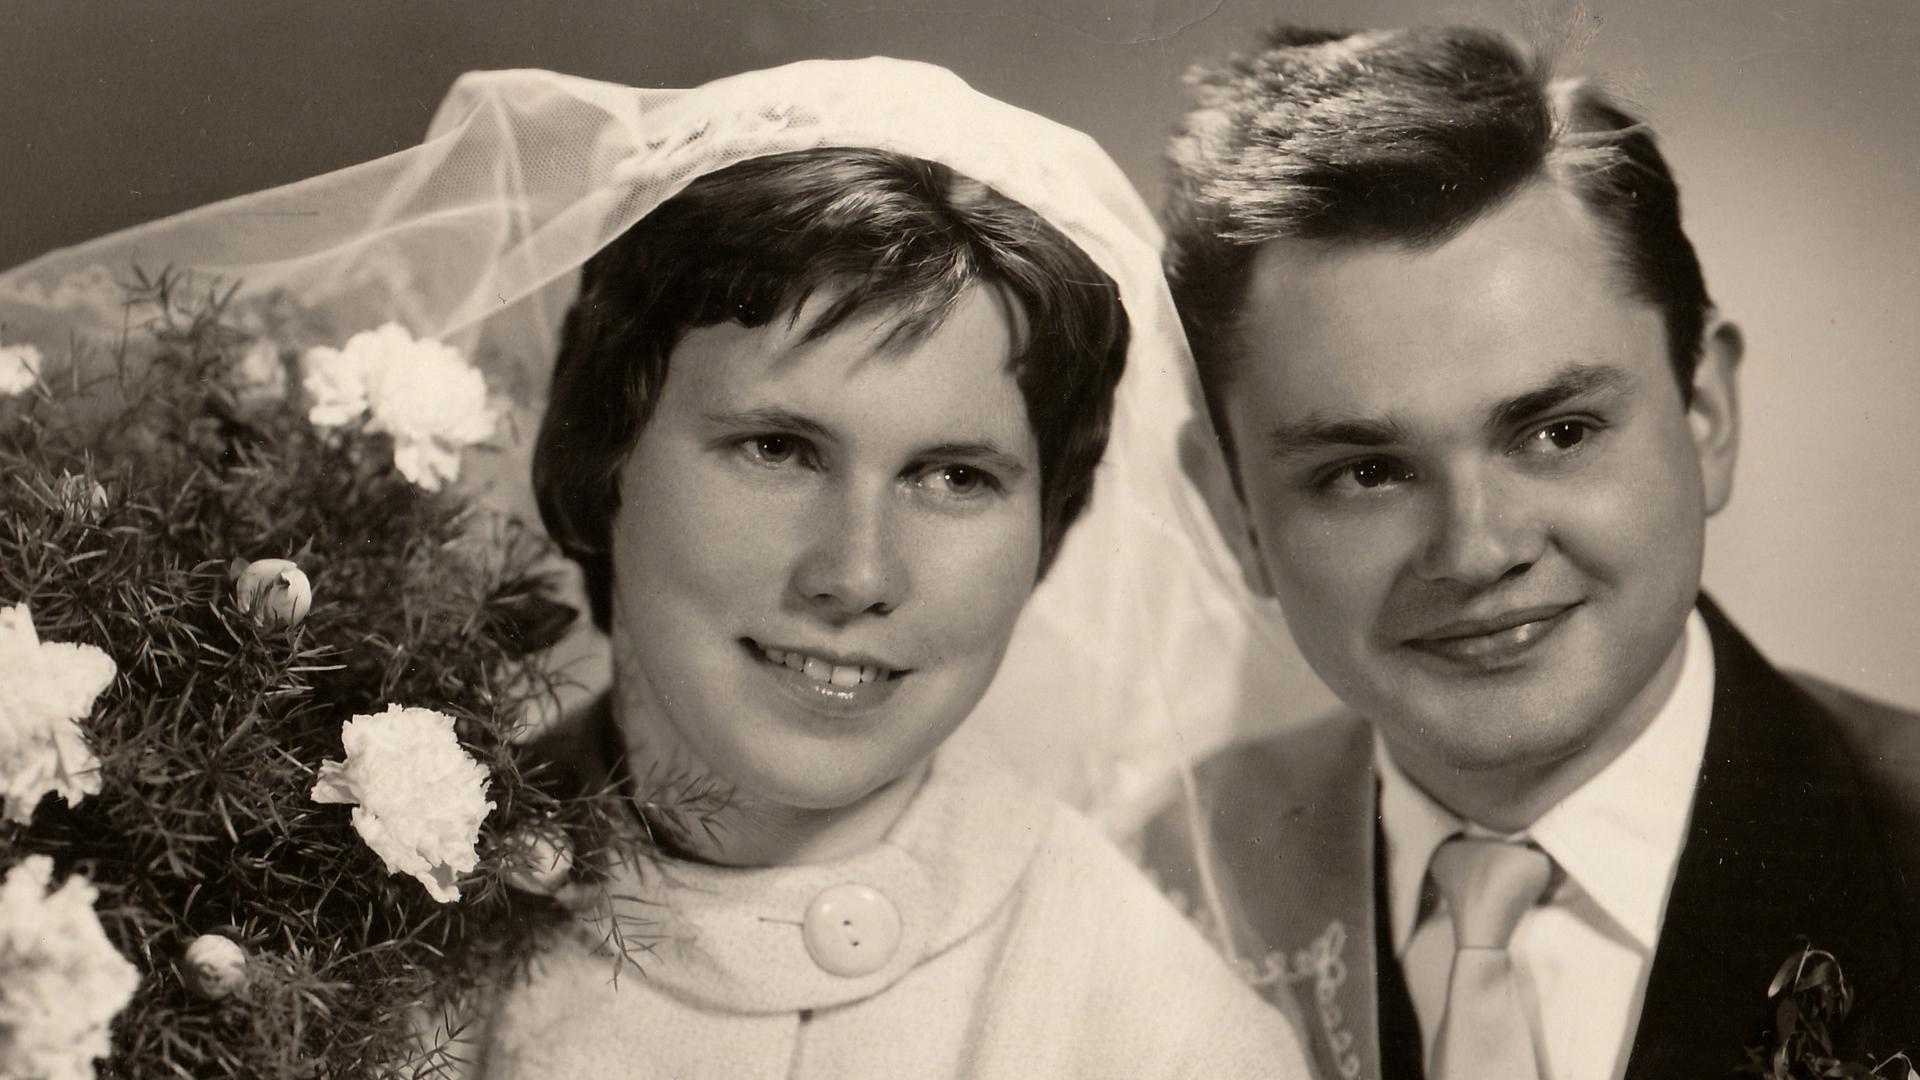 Schwarz-weiß-Fotografie eines Brautpaars.